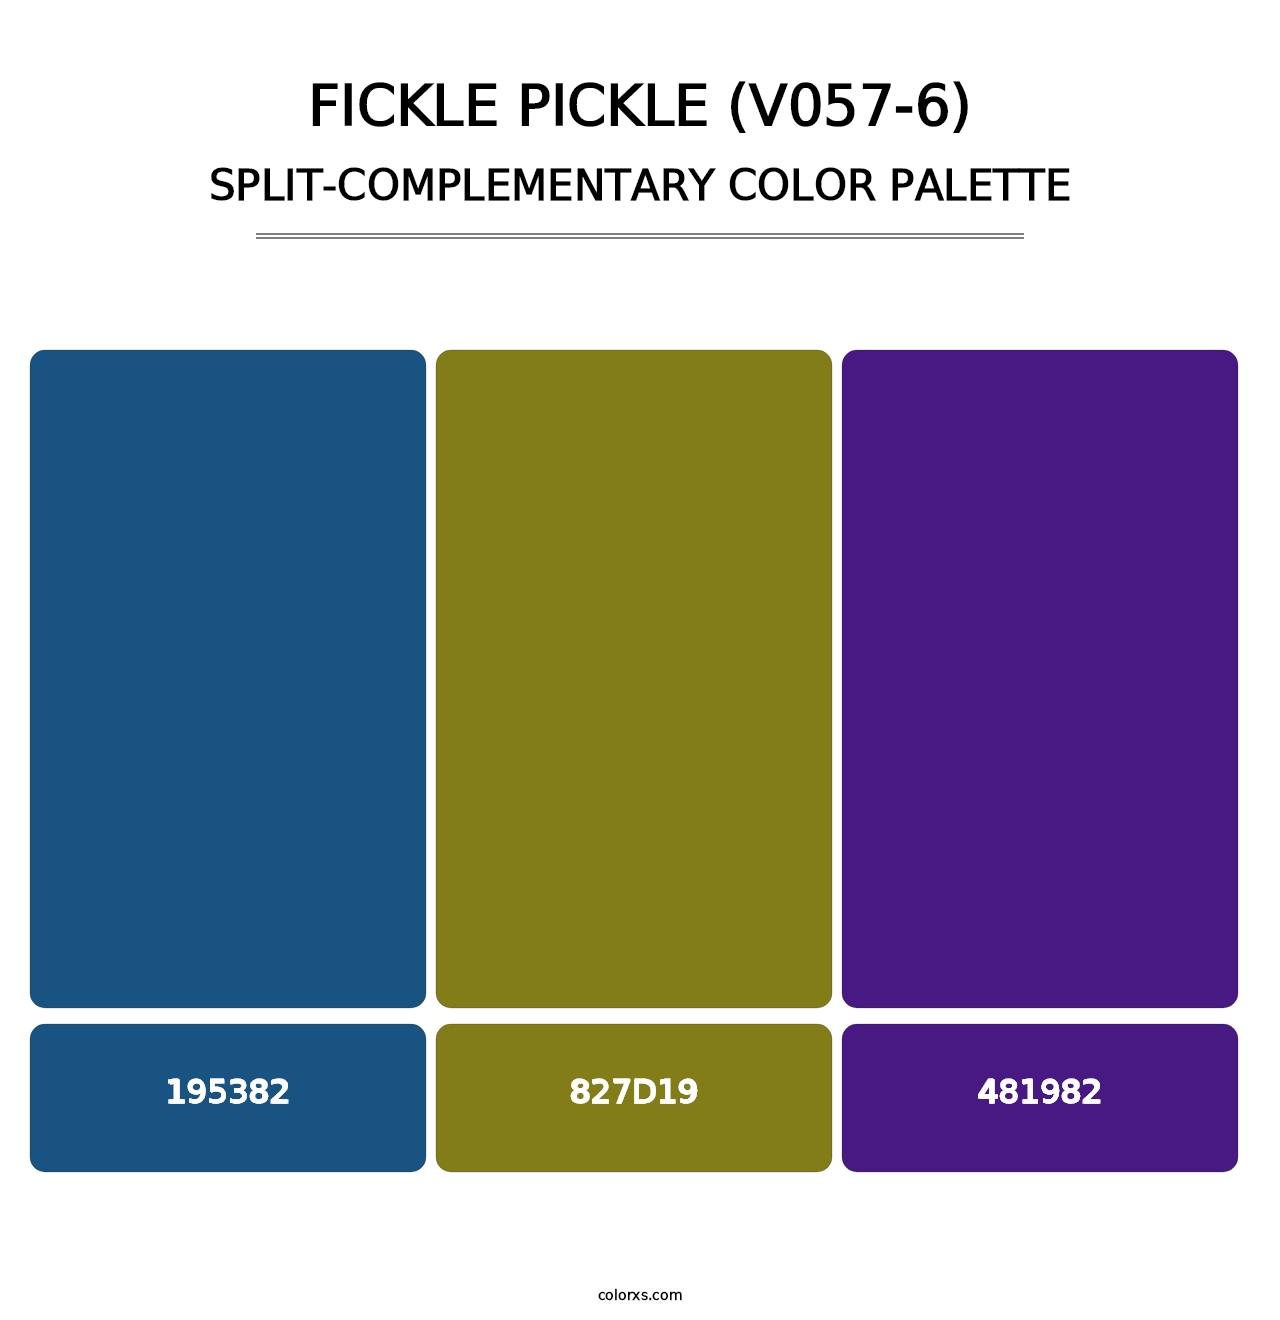 Fickle Pickle (V057-6) - Split-Complementary Color Palette